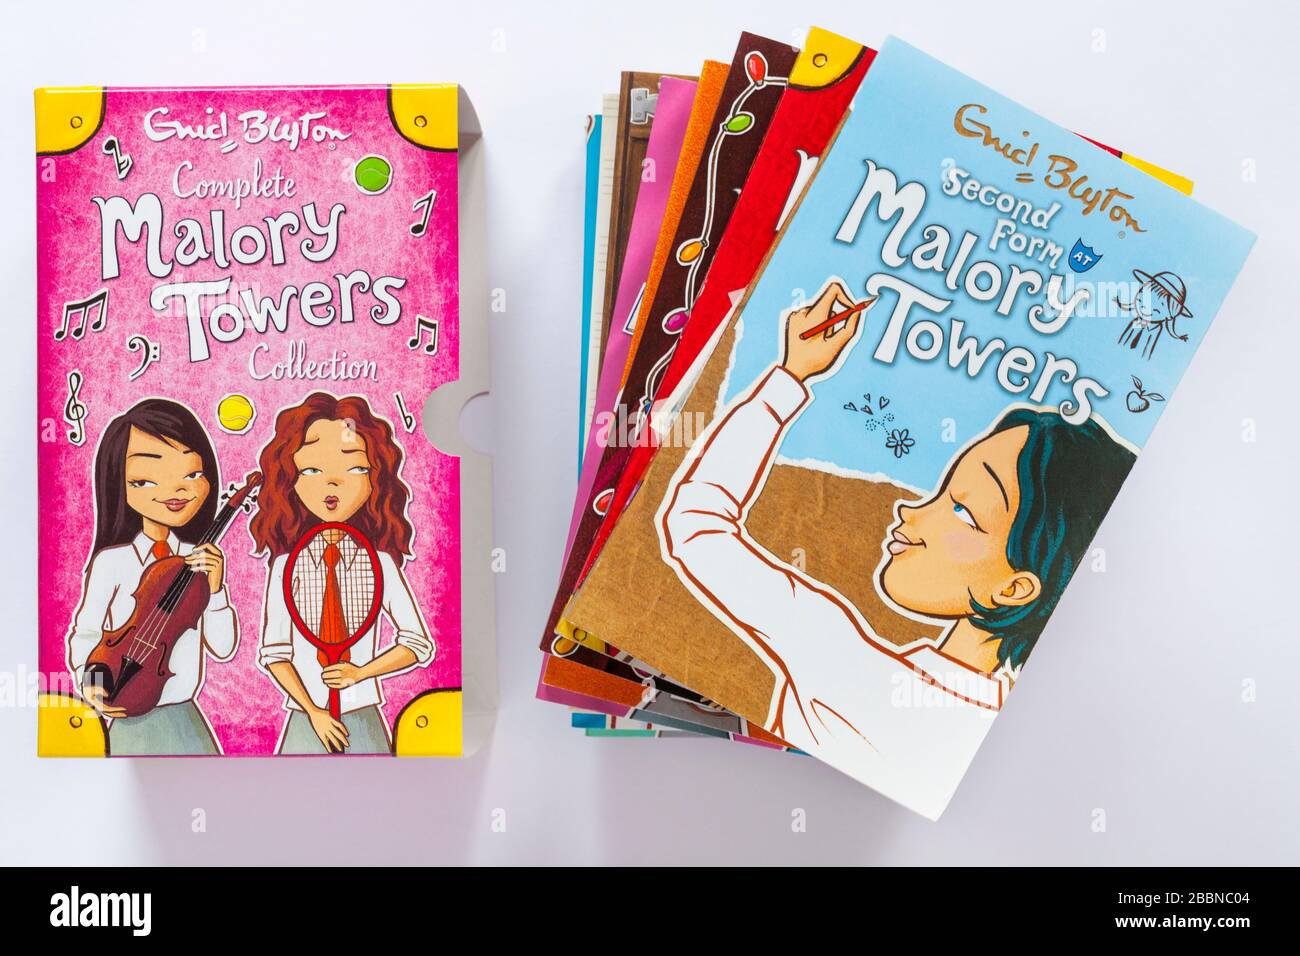 Vollständige Malory Towers Collection Bücher von Enid Blyton - Bücher mit zweiter Form im Malory Towers Buch oben isoliert auf weißem Hintergrund Stockfoto